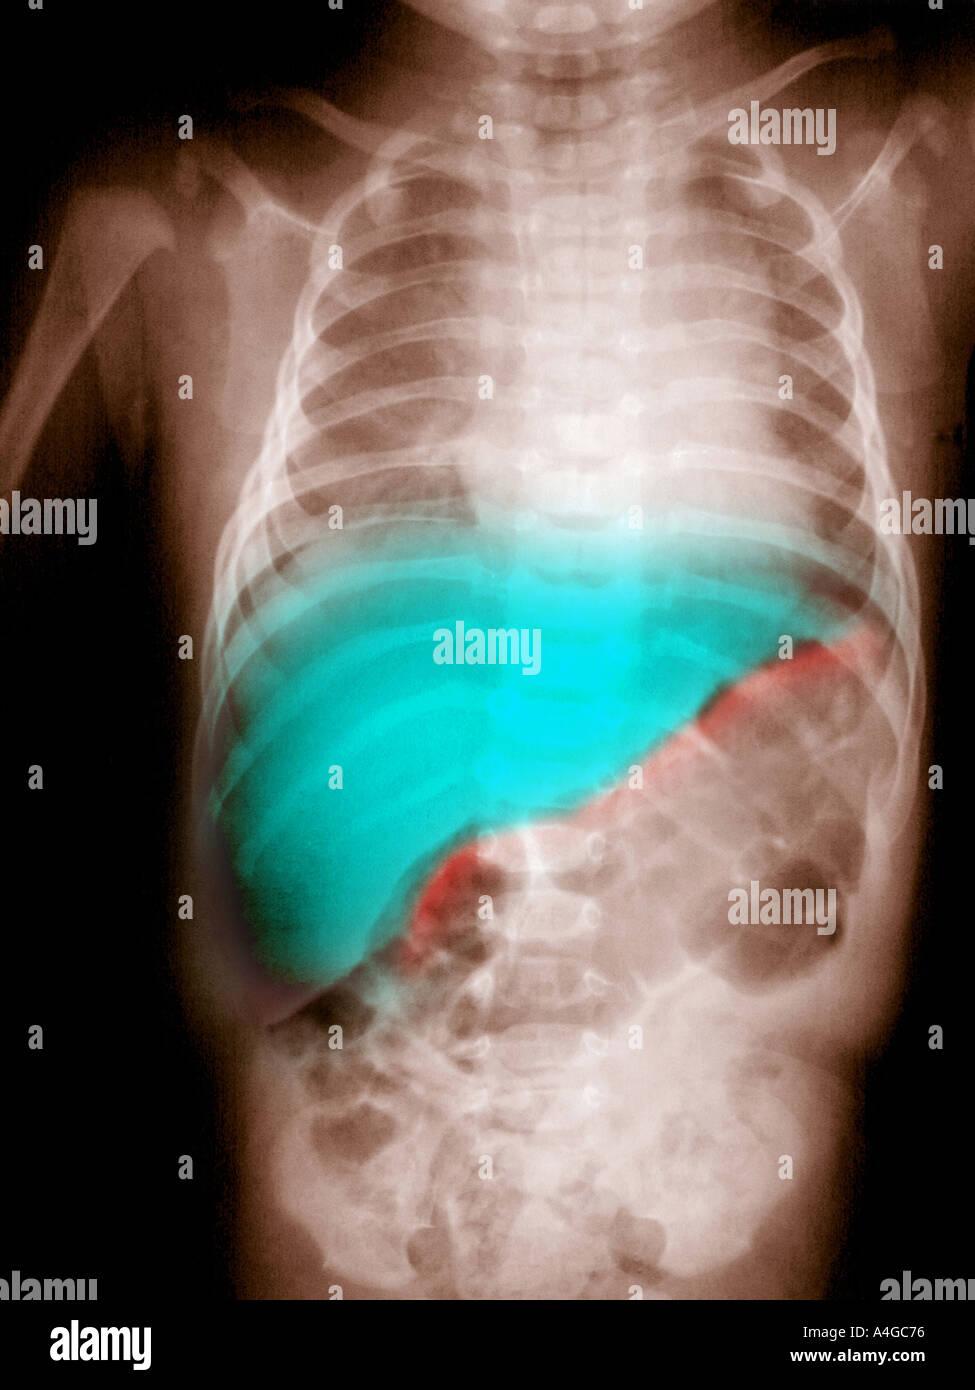 Garçon de 3 mois abdomen xray soulignant le foie normal indiqué en vert Banque D'Images